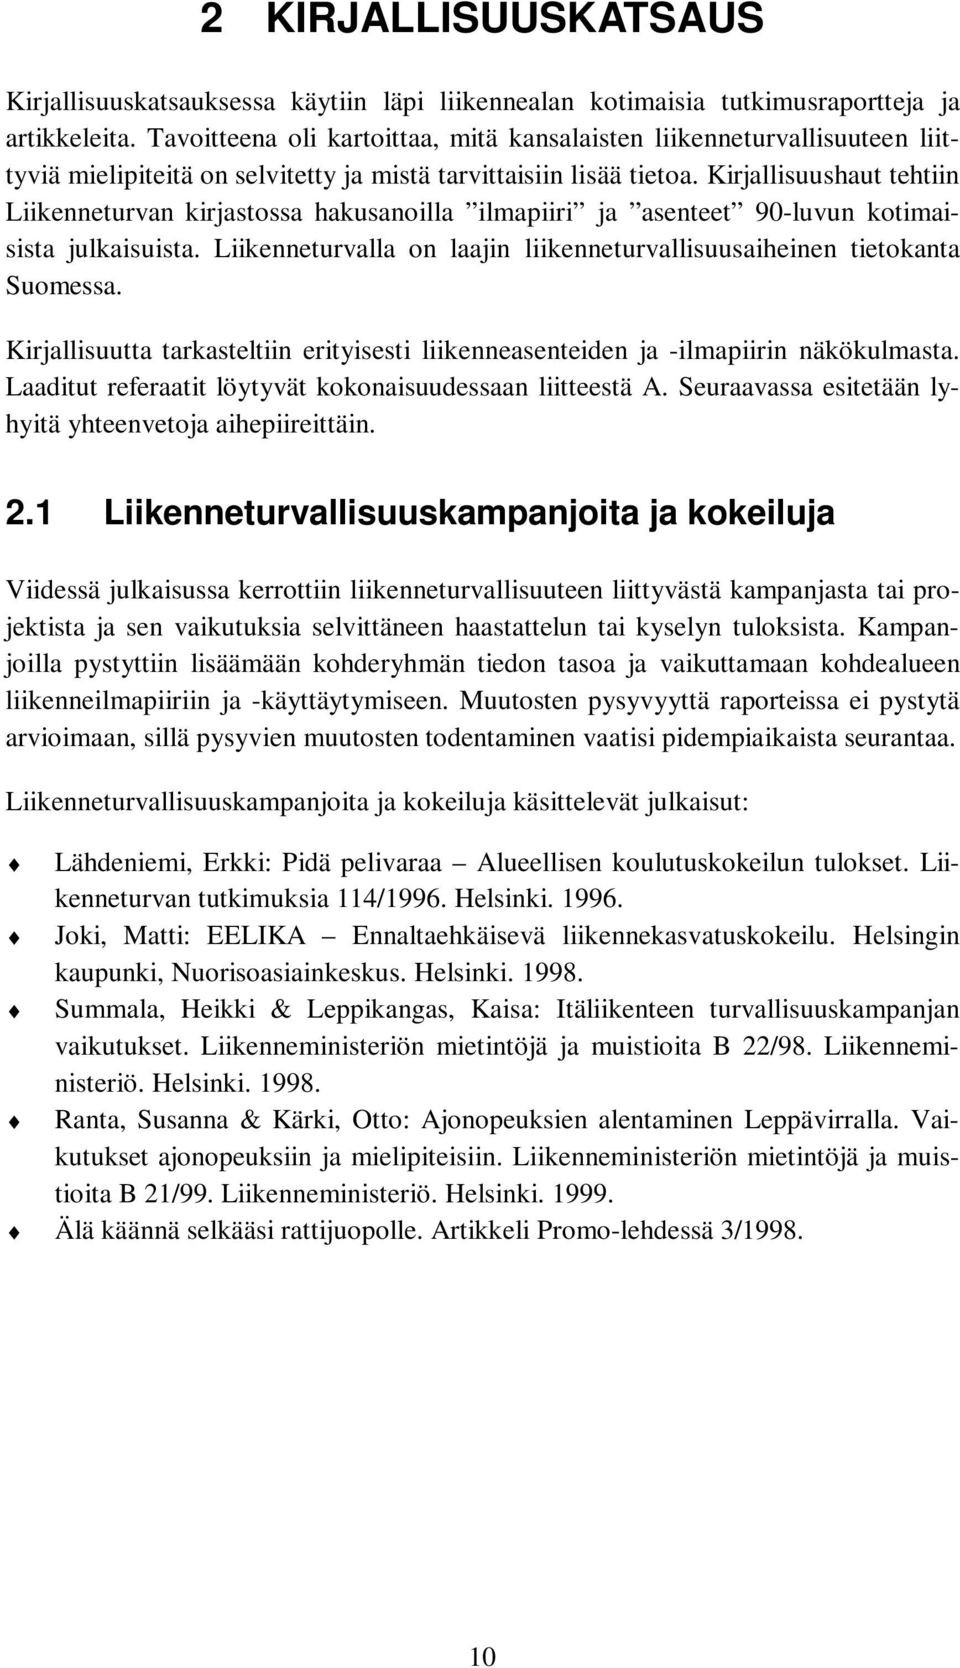 Kirjallisuushaut tehtiin Liikenneturvan kirjastossa hakusanoilla ilmapiiri ja asenteet 90-luvun kotimaisista julkaisuista. Liikenneturvalla on laajin liikenneturvallisuusaiheinen tietokanta Suomessa.